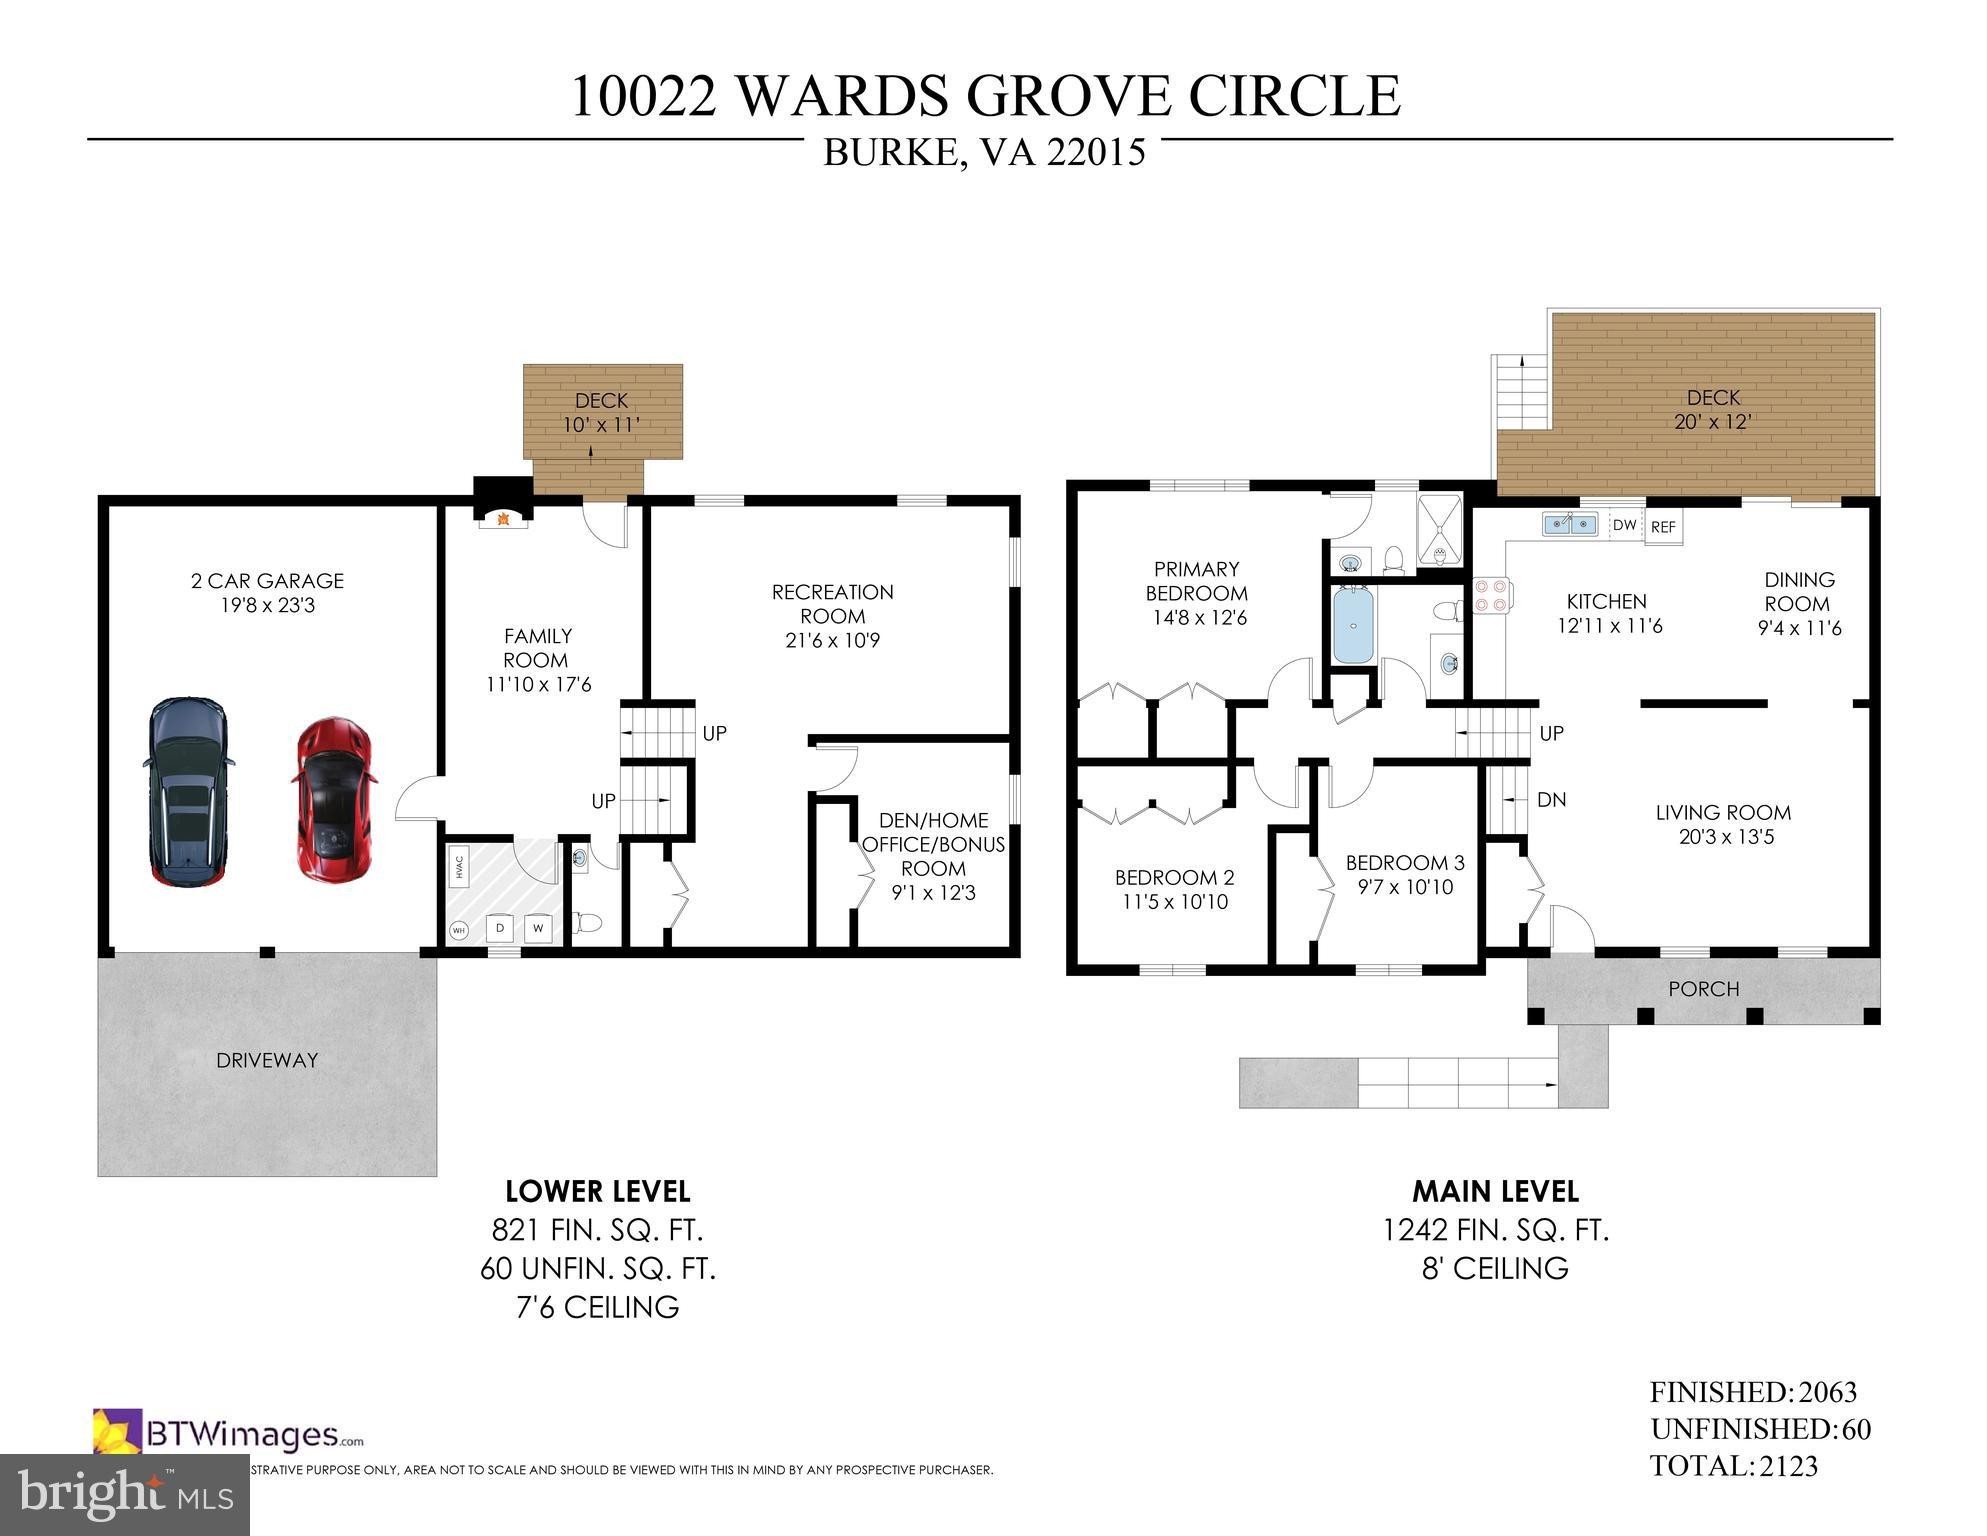 9. 10022 Wards Grove Circle